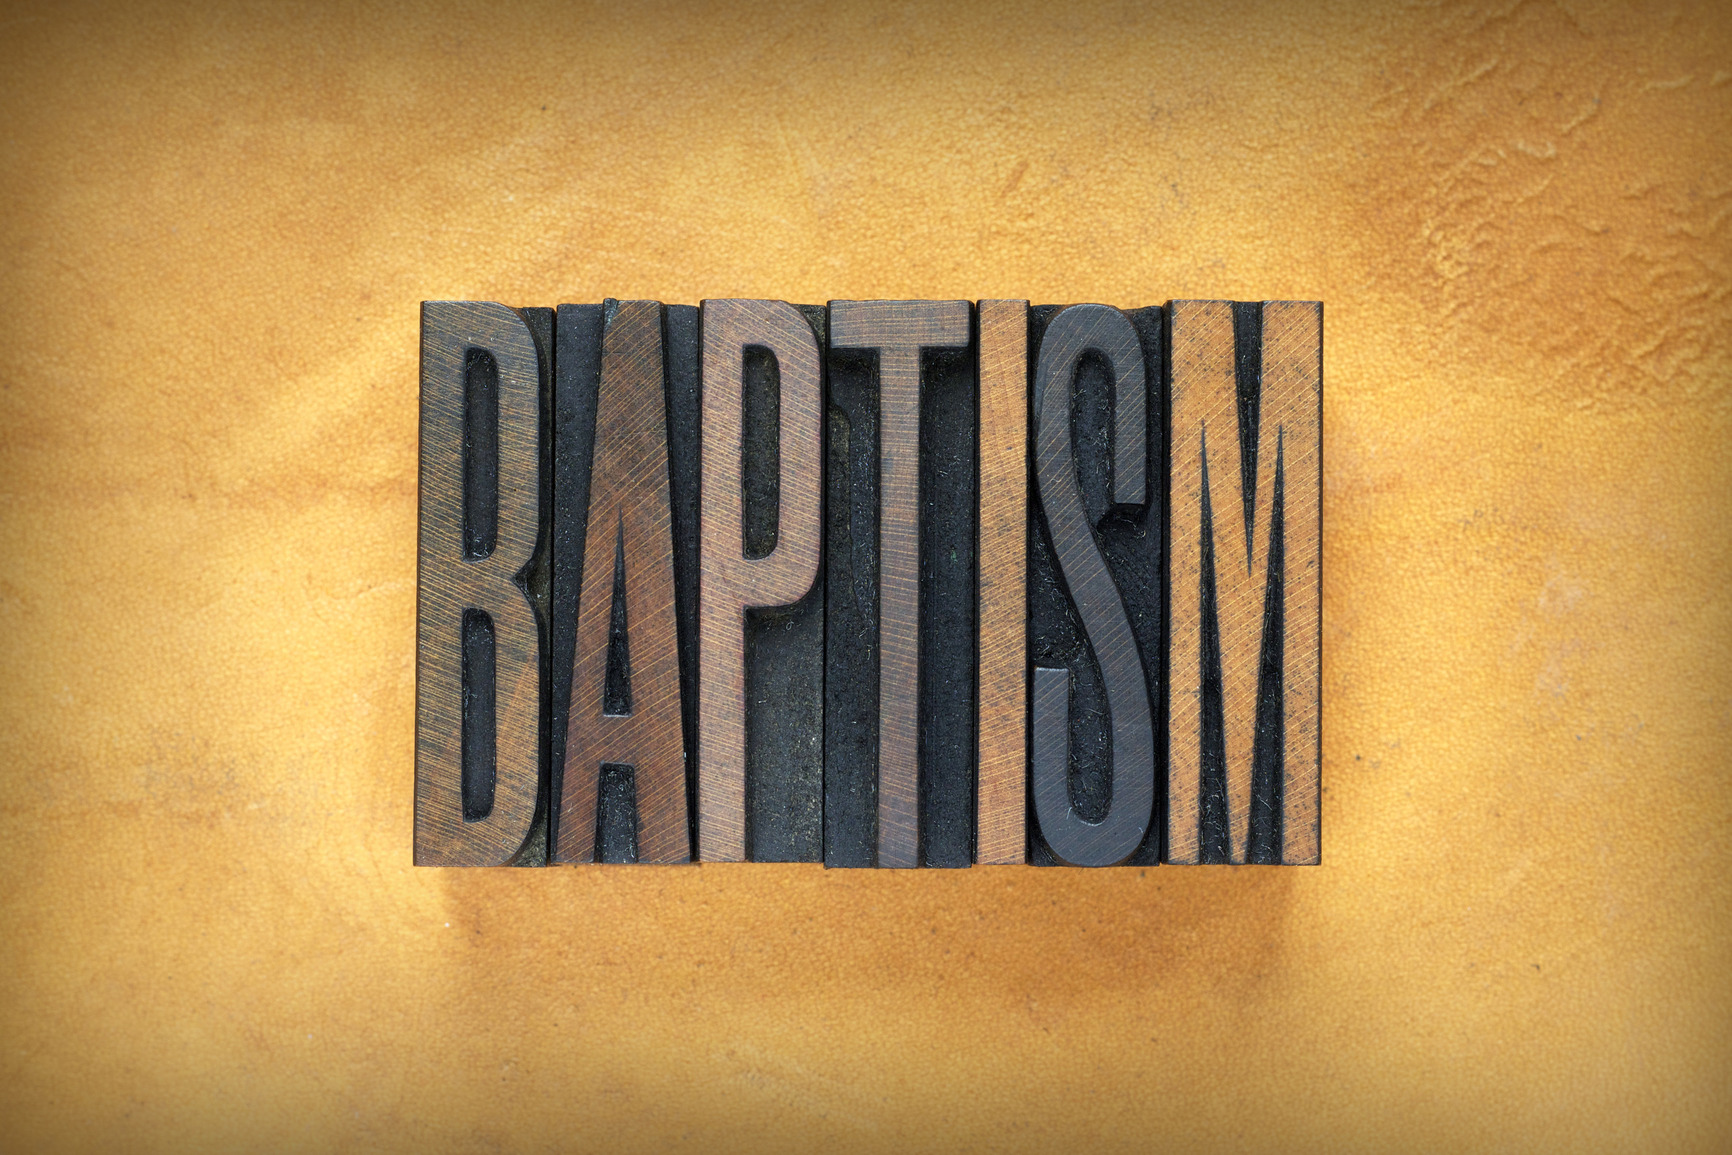 Baptism Letterpress